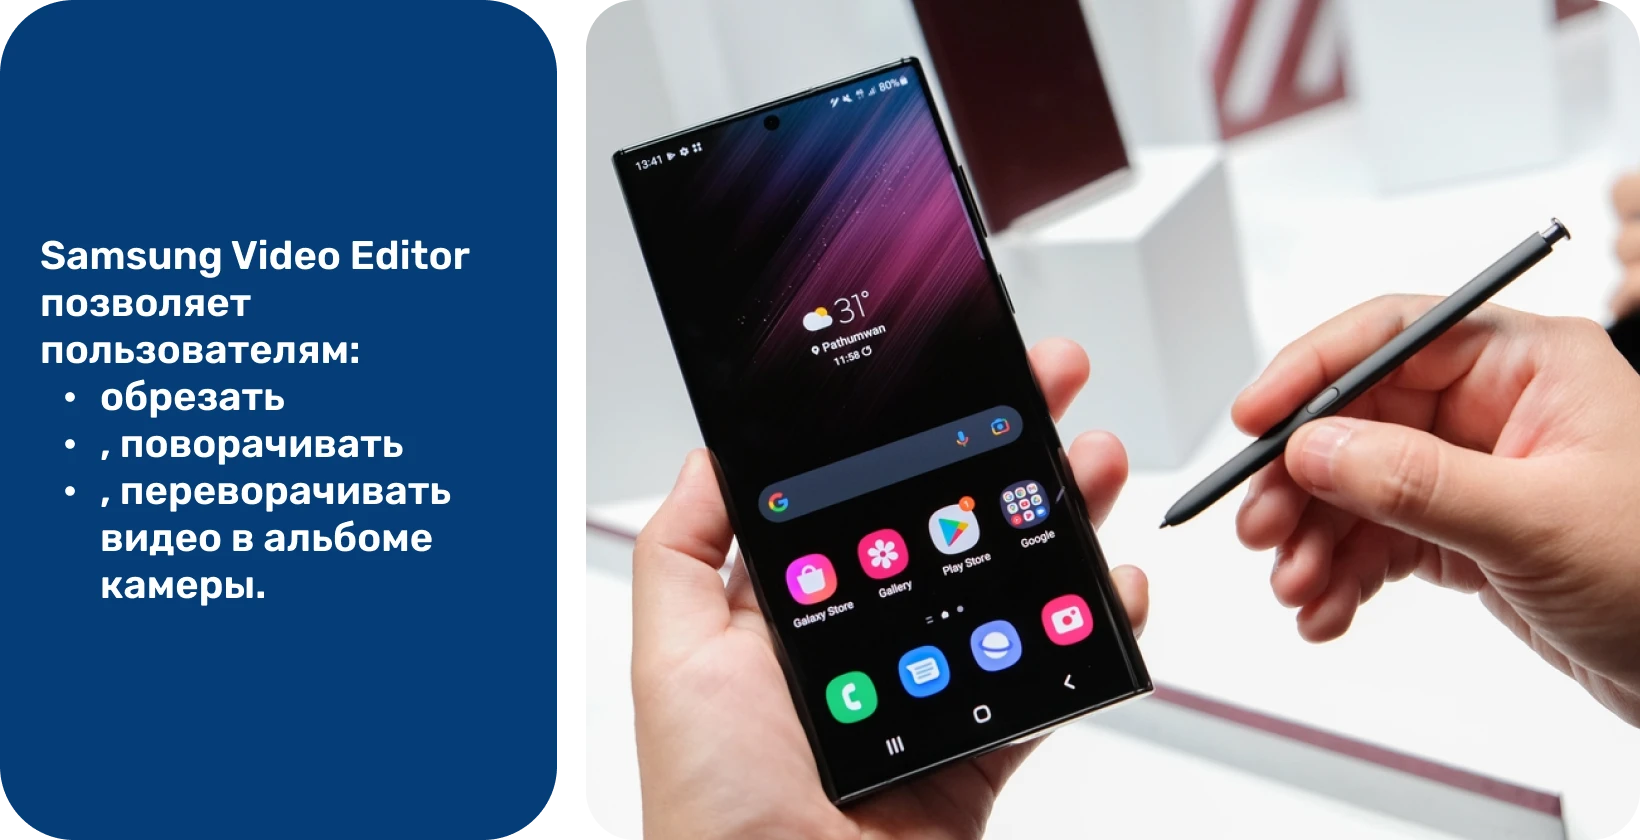 Держите устройство Samsung Note с пером S Pen, готовое к редактированию и добавлению текста к видео на экране.